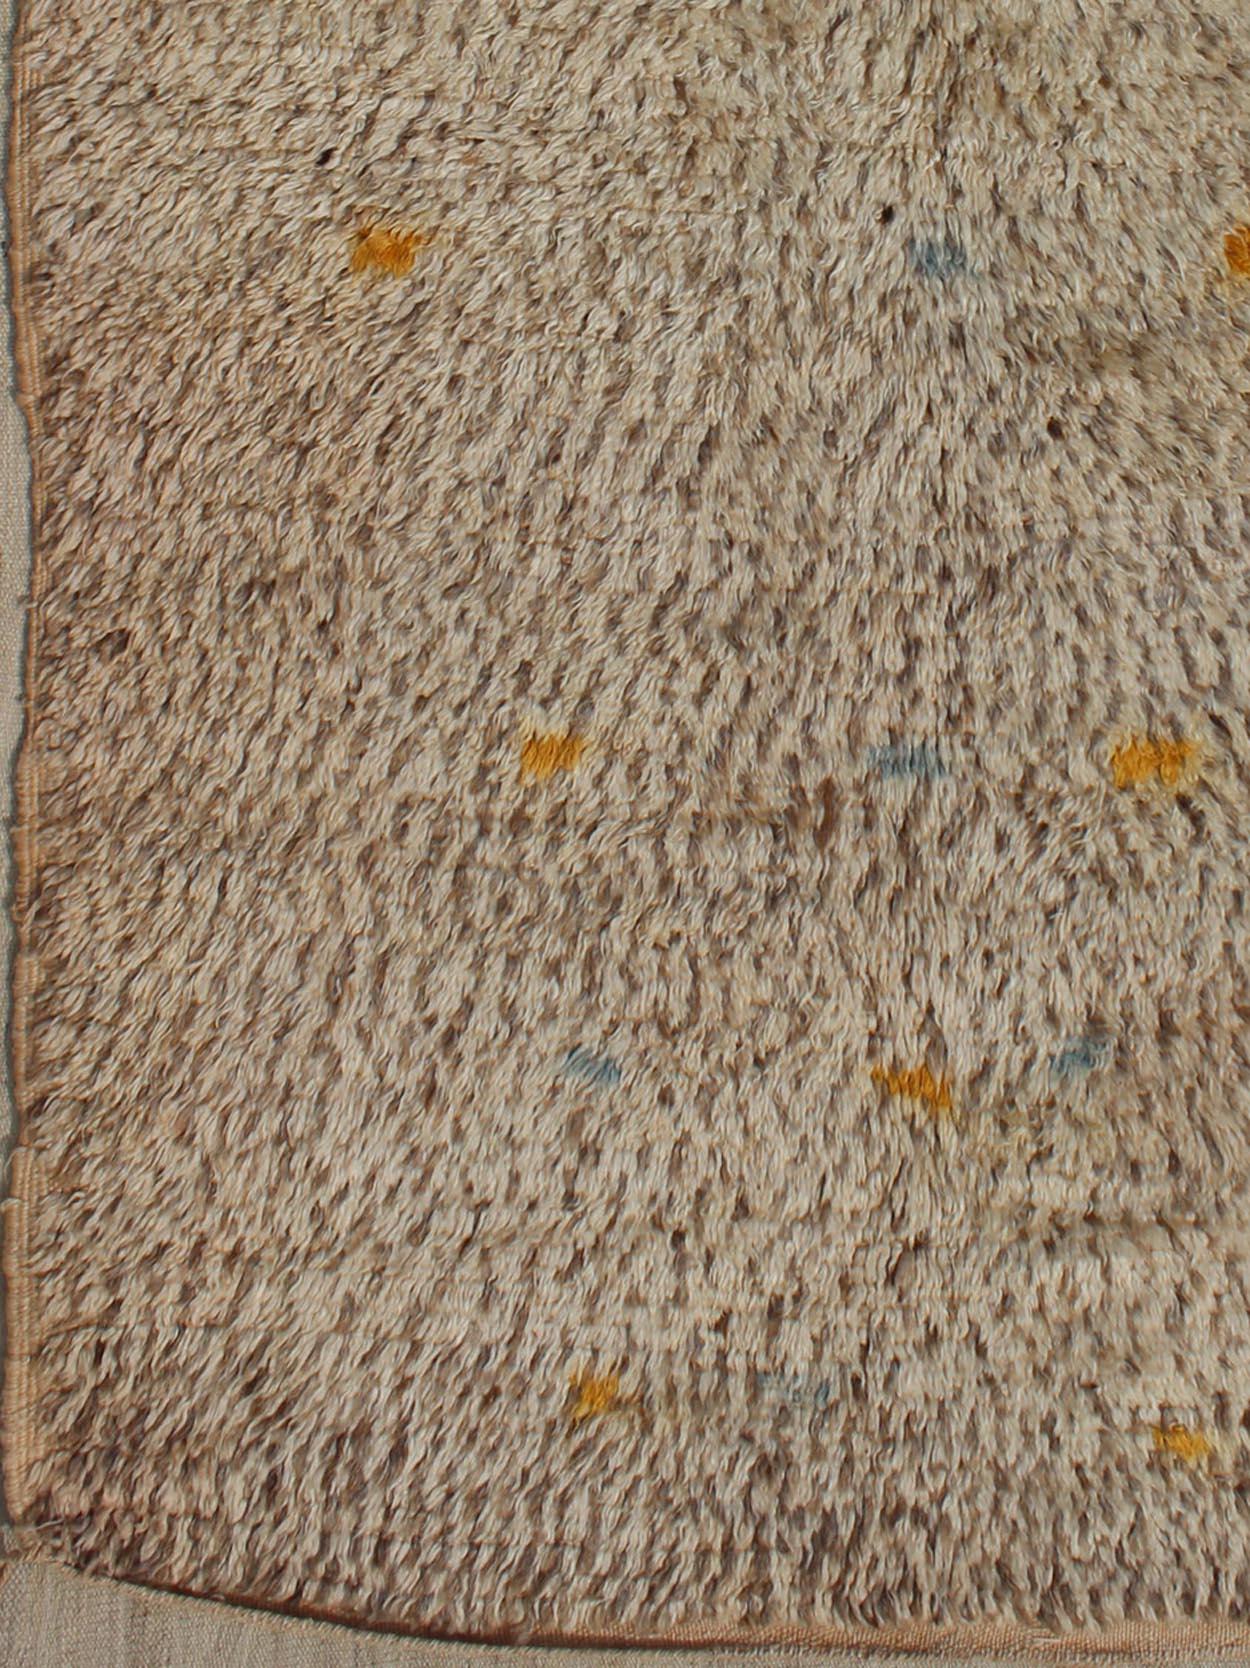 Tapis marocain vintage sur un fond taupe avec des touches de bleu et de jaune.
Tapis BDS-20124, Keivan Woven Arts / pays d'origine / type : Maroc / Tribal, vers 1940.
Mesures : 4'0 x 6'6.
Ce tapis marocain vintage unique est caractérisé par un